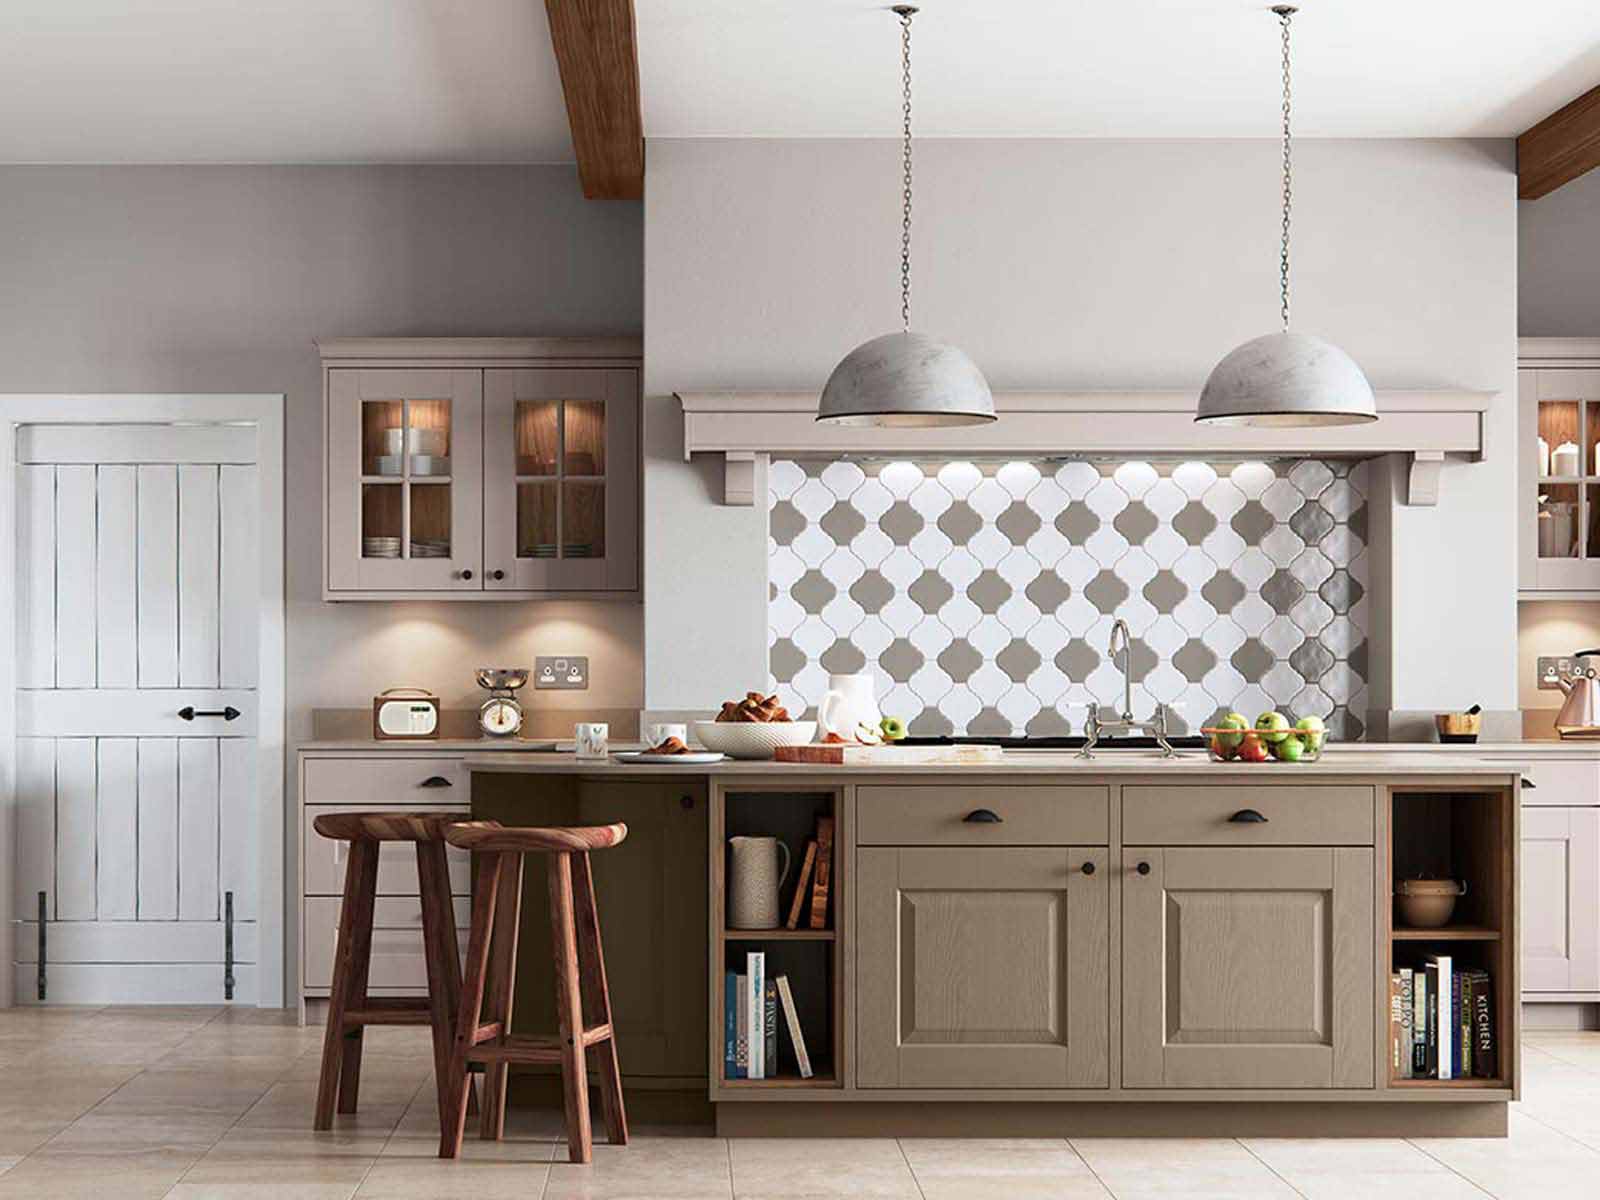 Pale green Carnegie kitchen range with tiled backsplash and industrial lighting